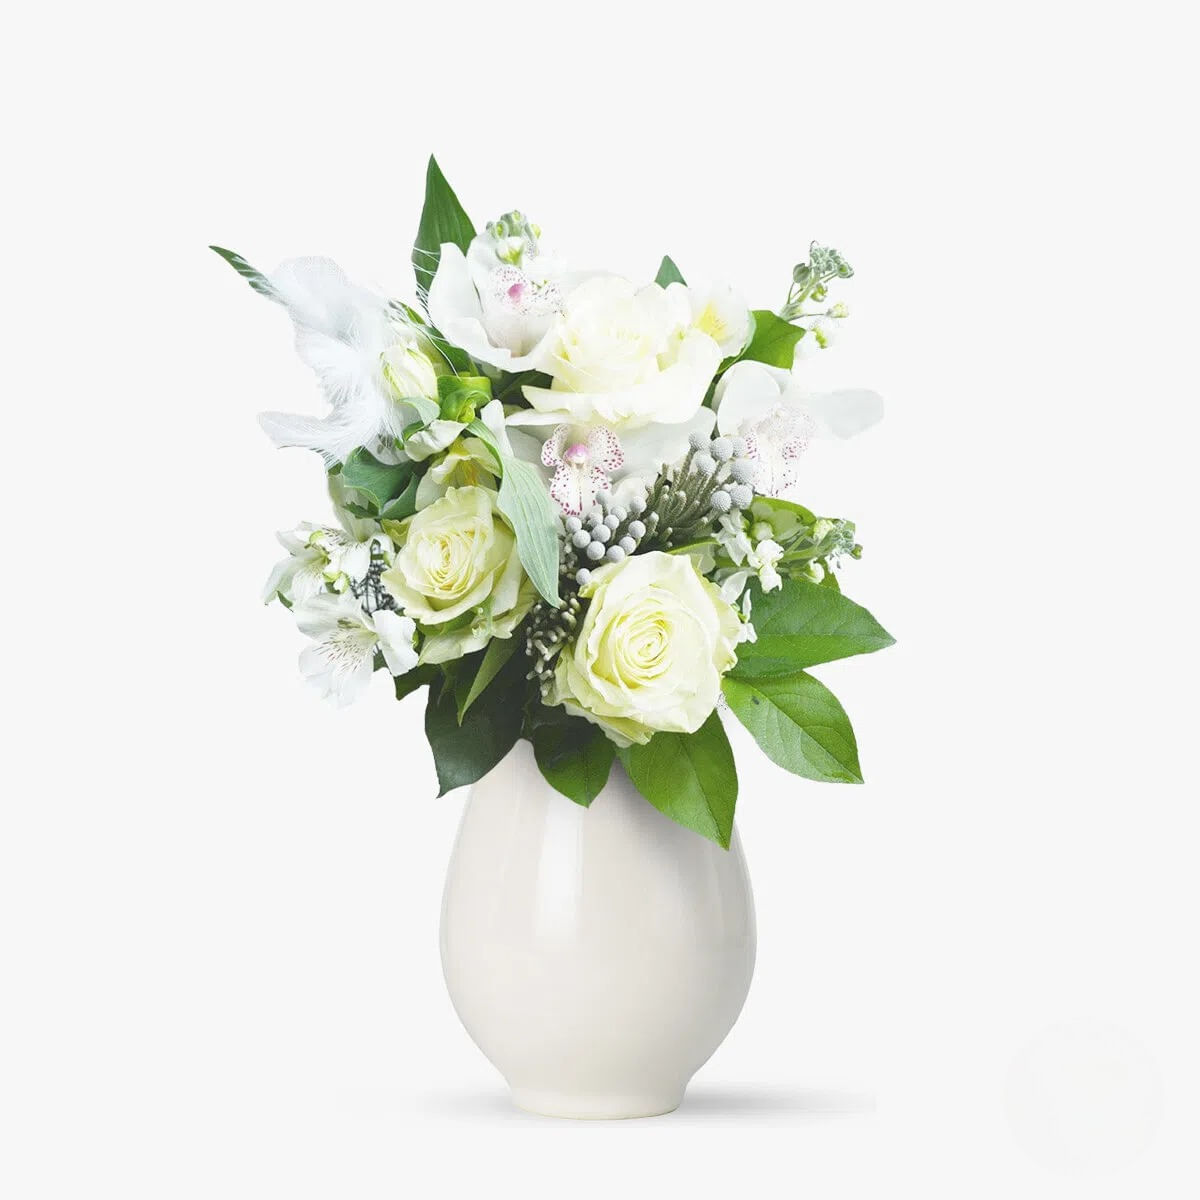 Buchet alb cu trandafiri albi, alstroemeria alba, matthiola alba cu pene